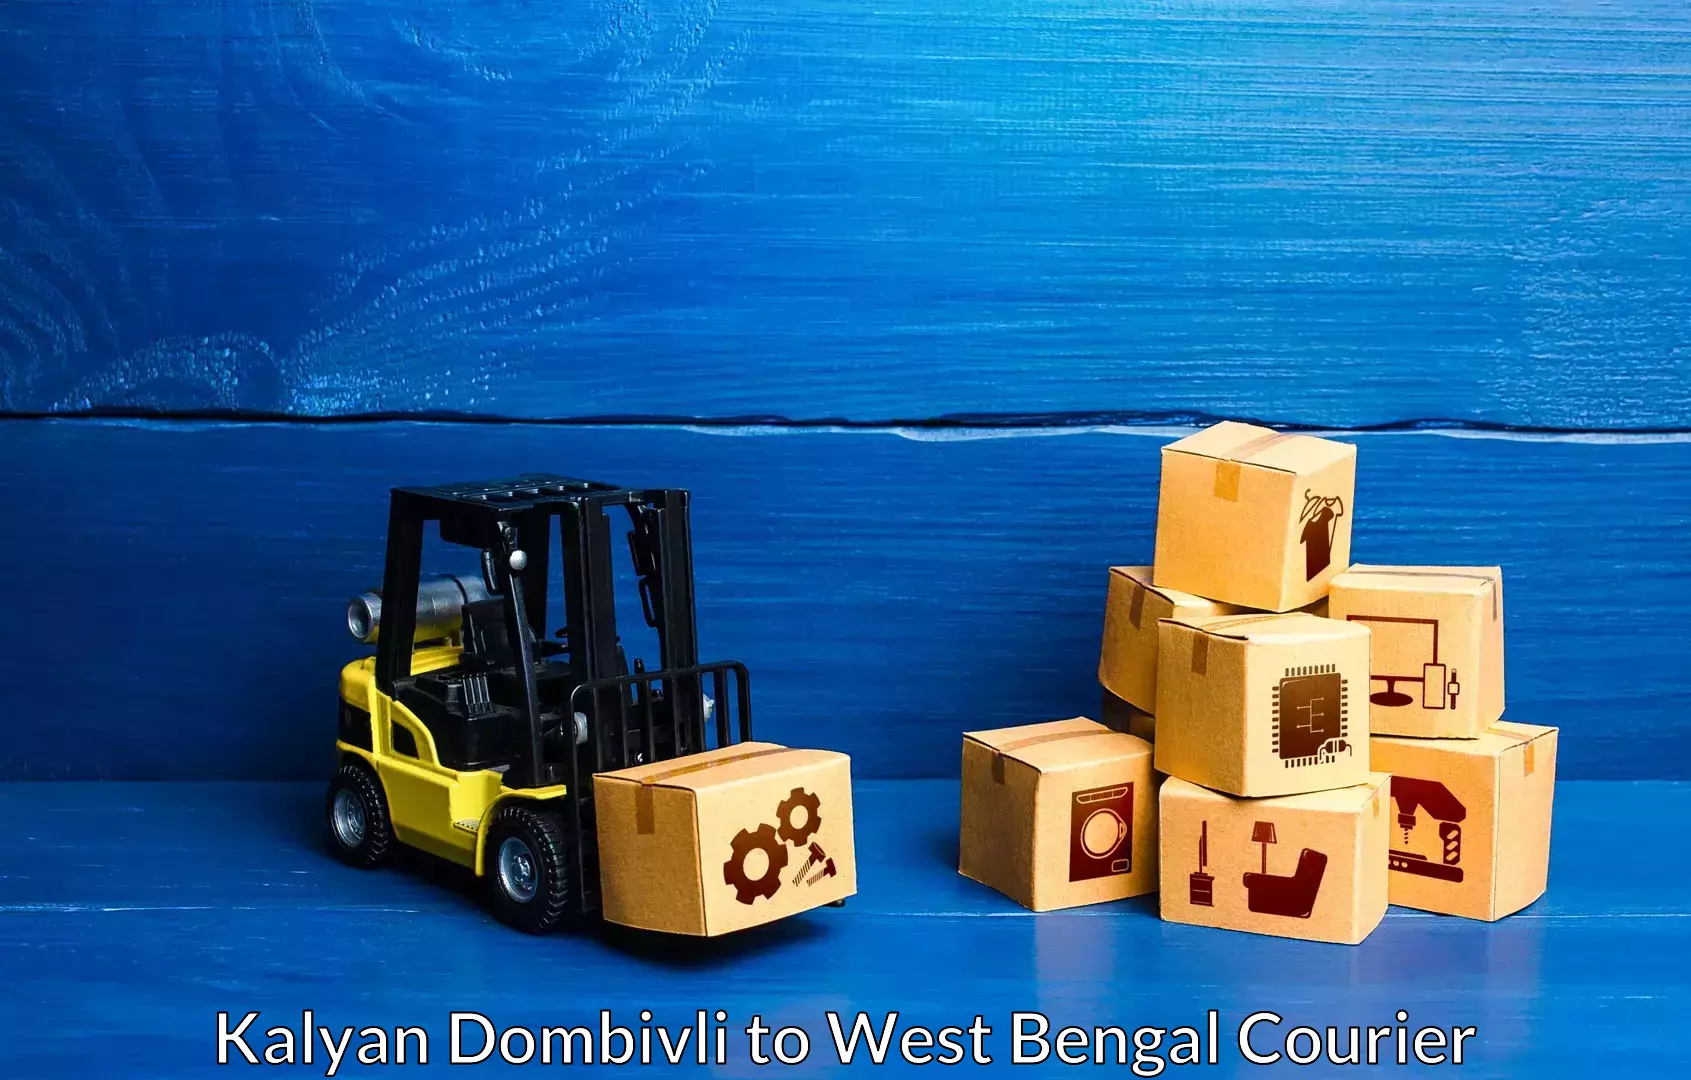 Furniture moving service in Kalyan Dombivli to Mirzapur Bardhaman